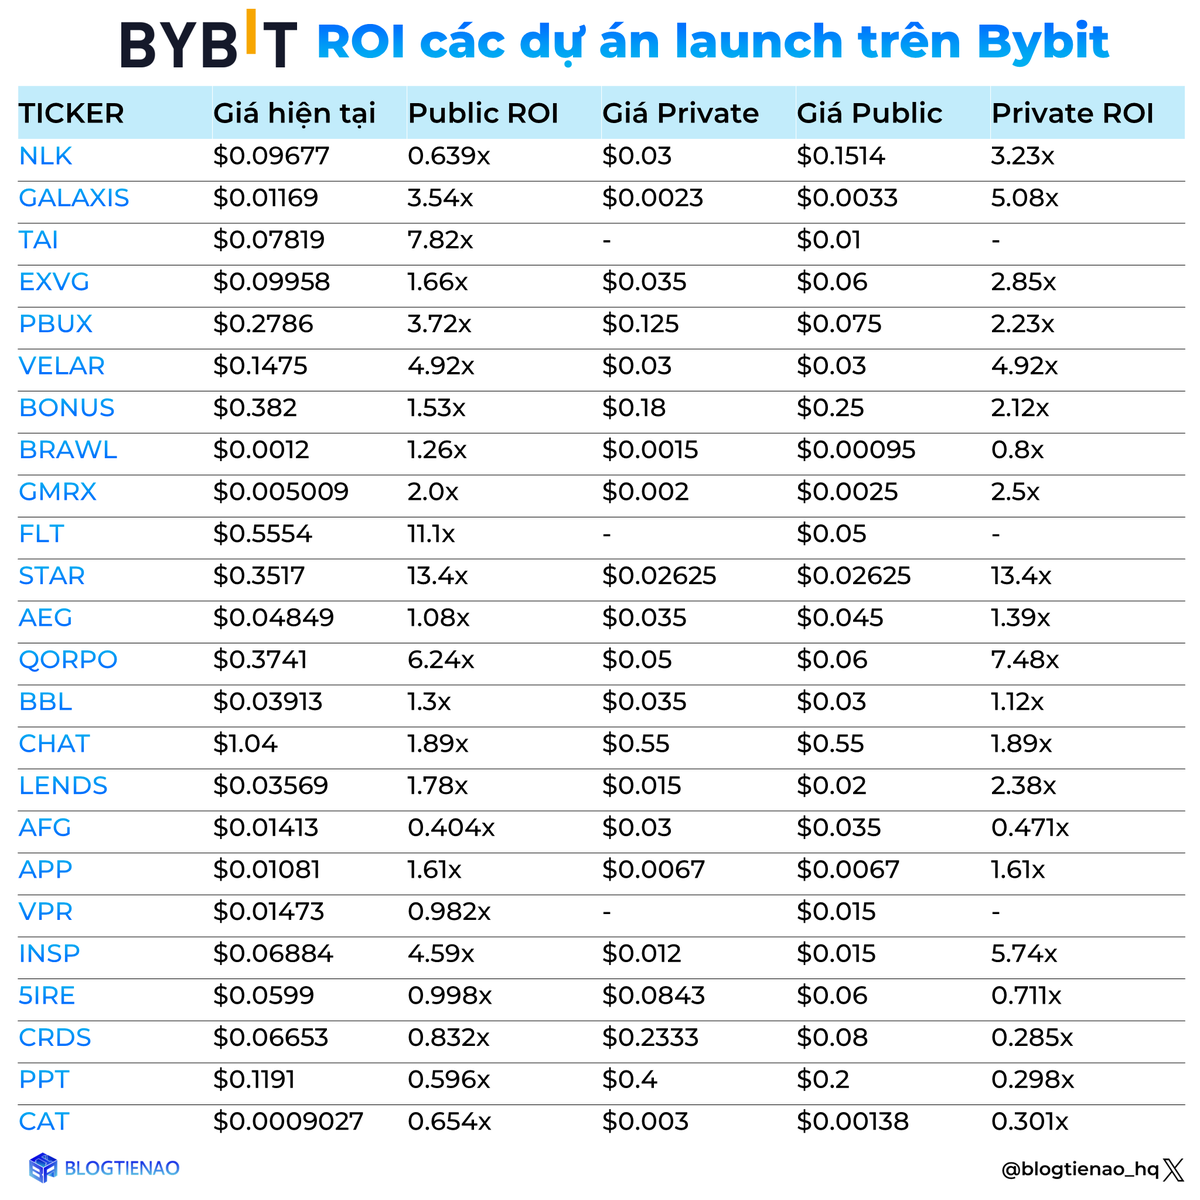 ROI của một số dự án launch trên Bybit

Cũng như bao sàn khác #Bybit có khá nhiều hình thức bán token như: Launchpad, Launchpool, WEB3 IDO,...

Bạn thích dự án được launch sàn nào BTA cung cấp cho bạn thông tin các dự án trên sàn đó

Các dự án hot trong list trên có